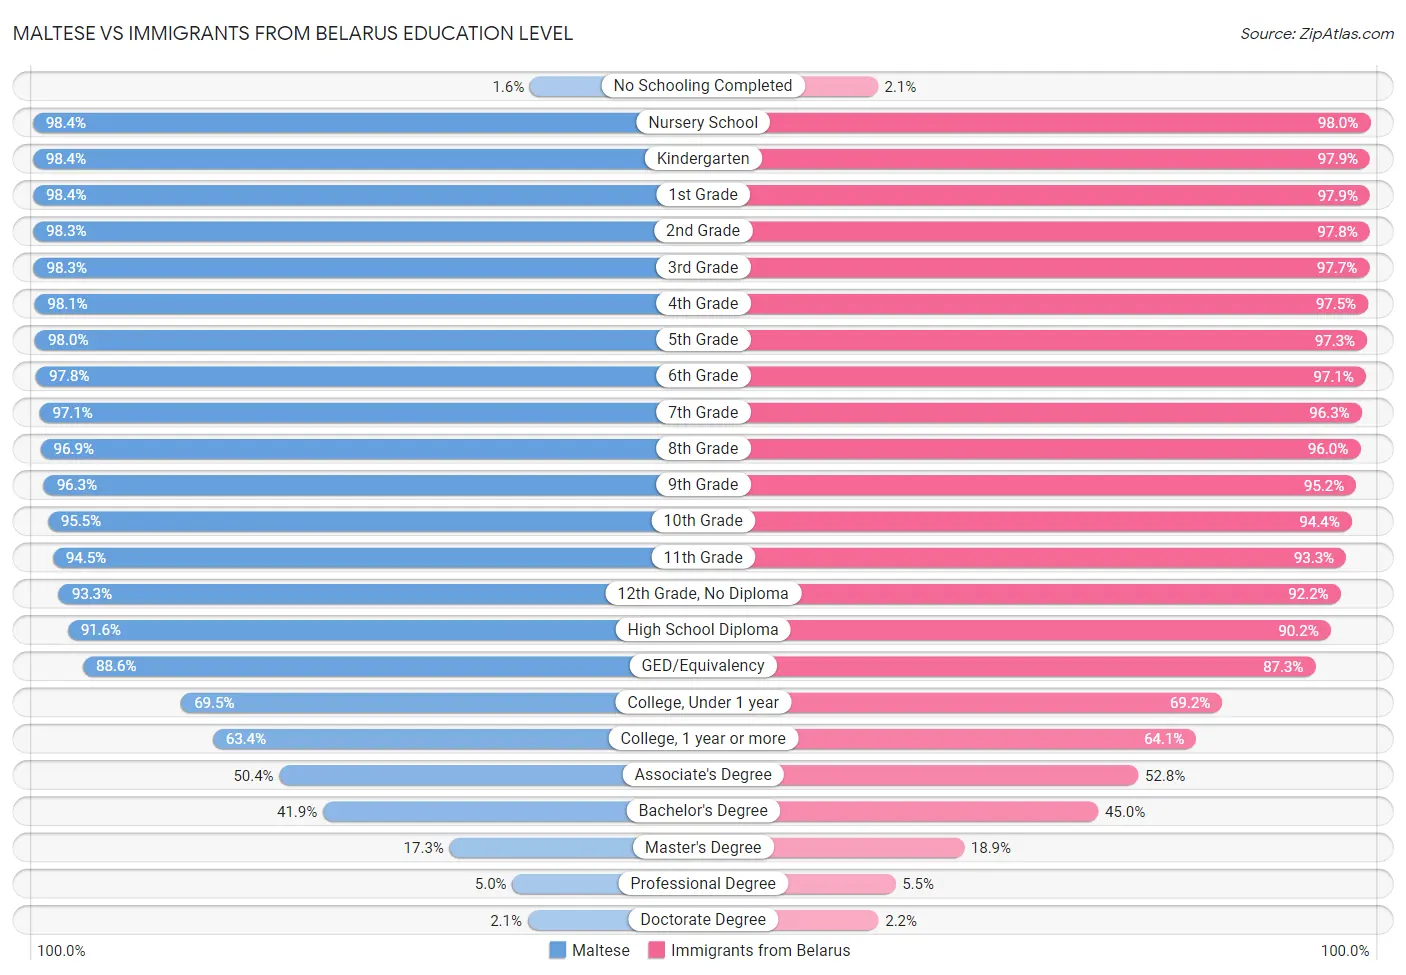 Maltese vs Immigrants from Belarus Education Level